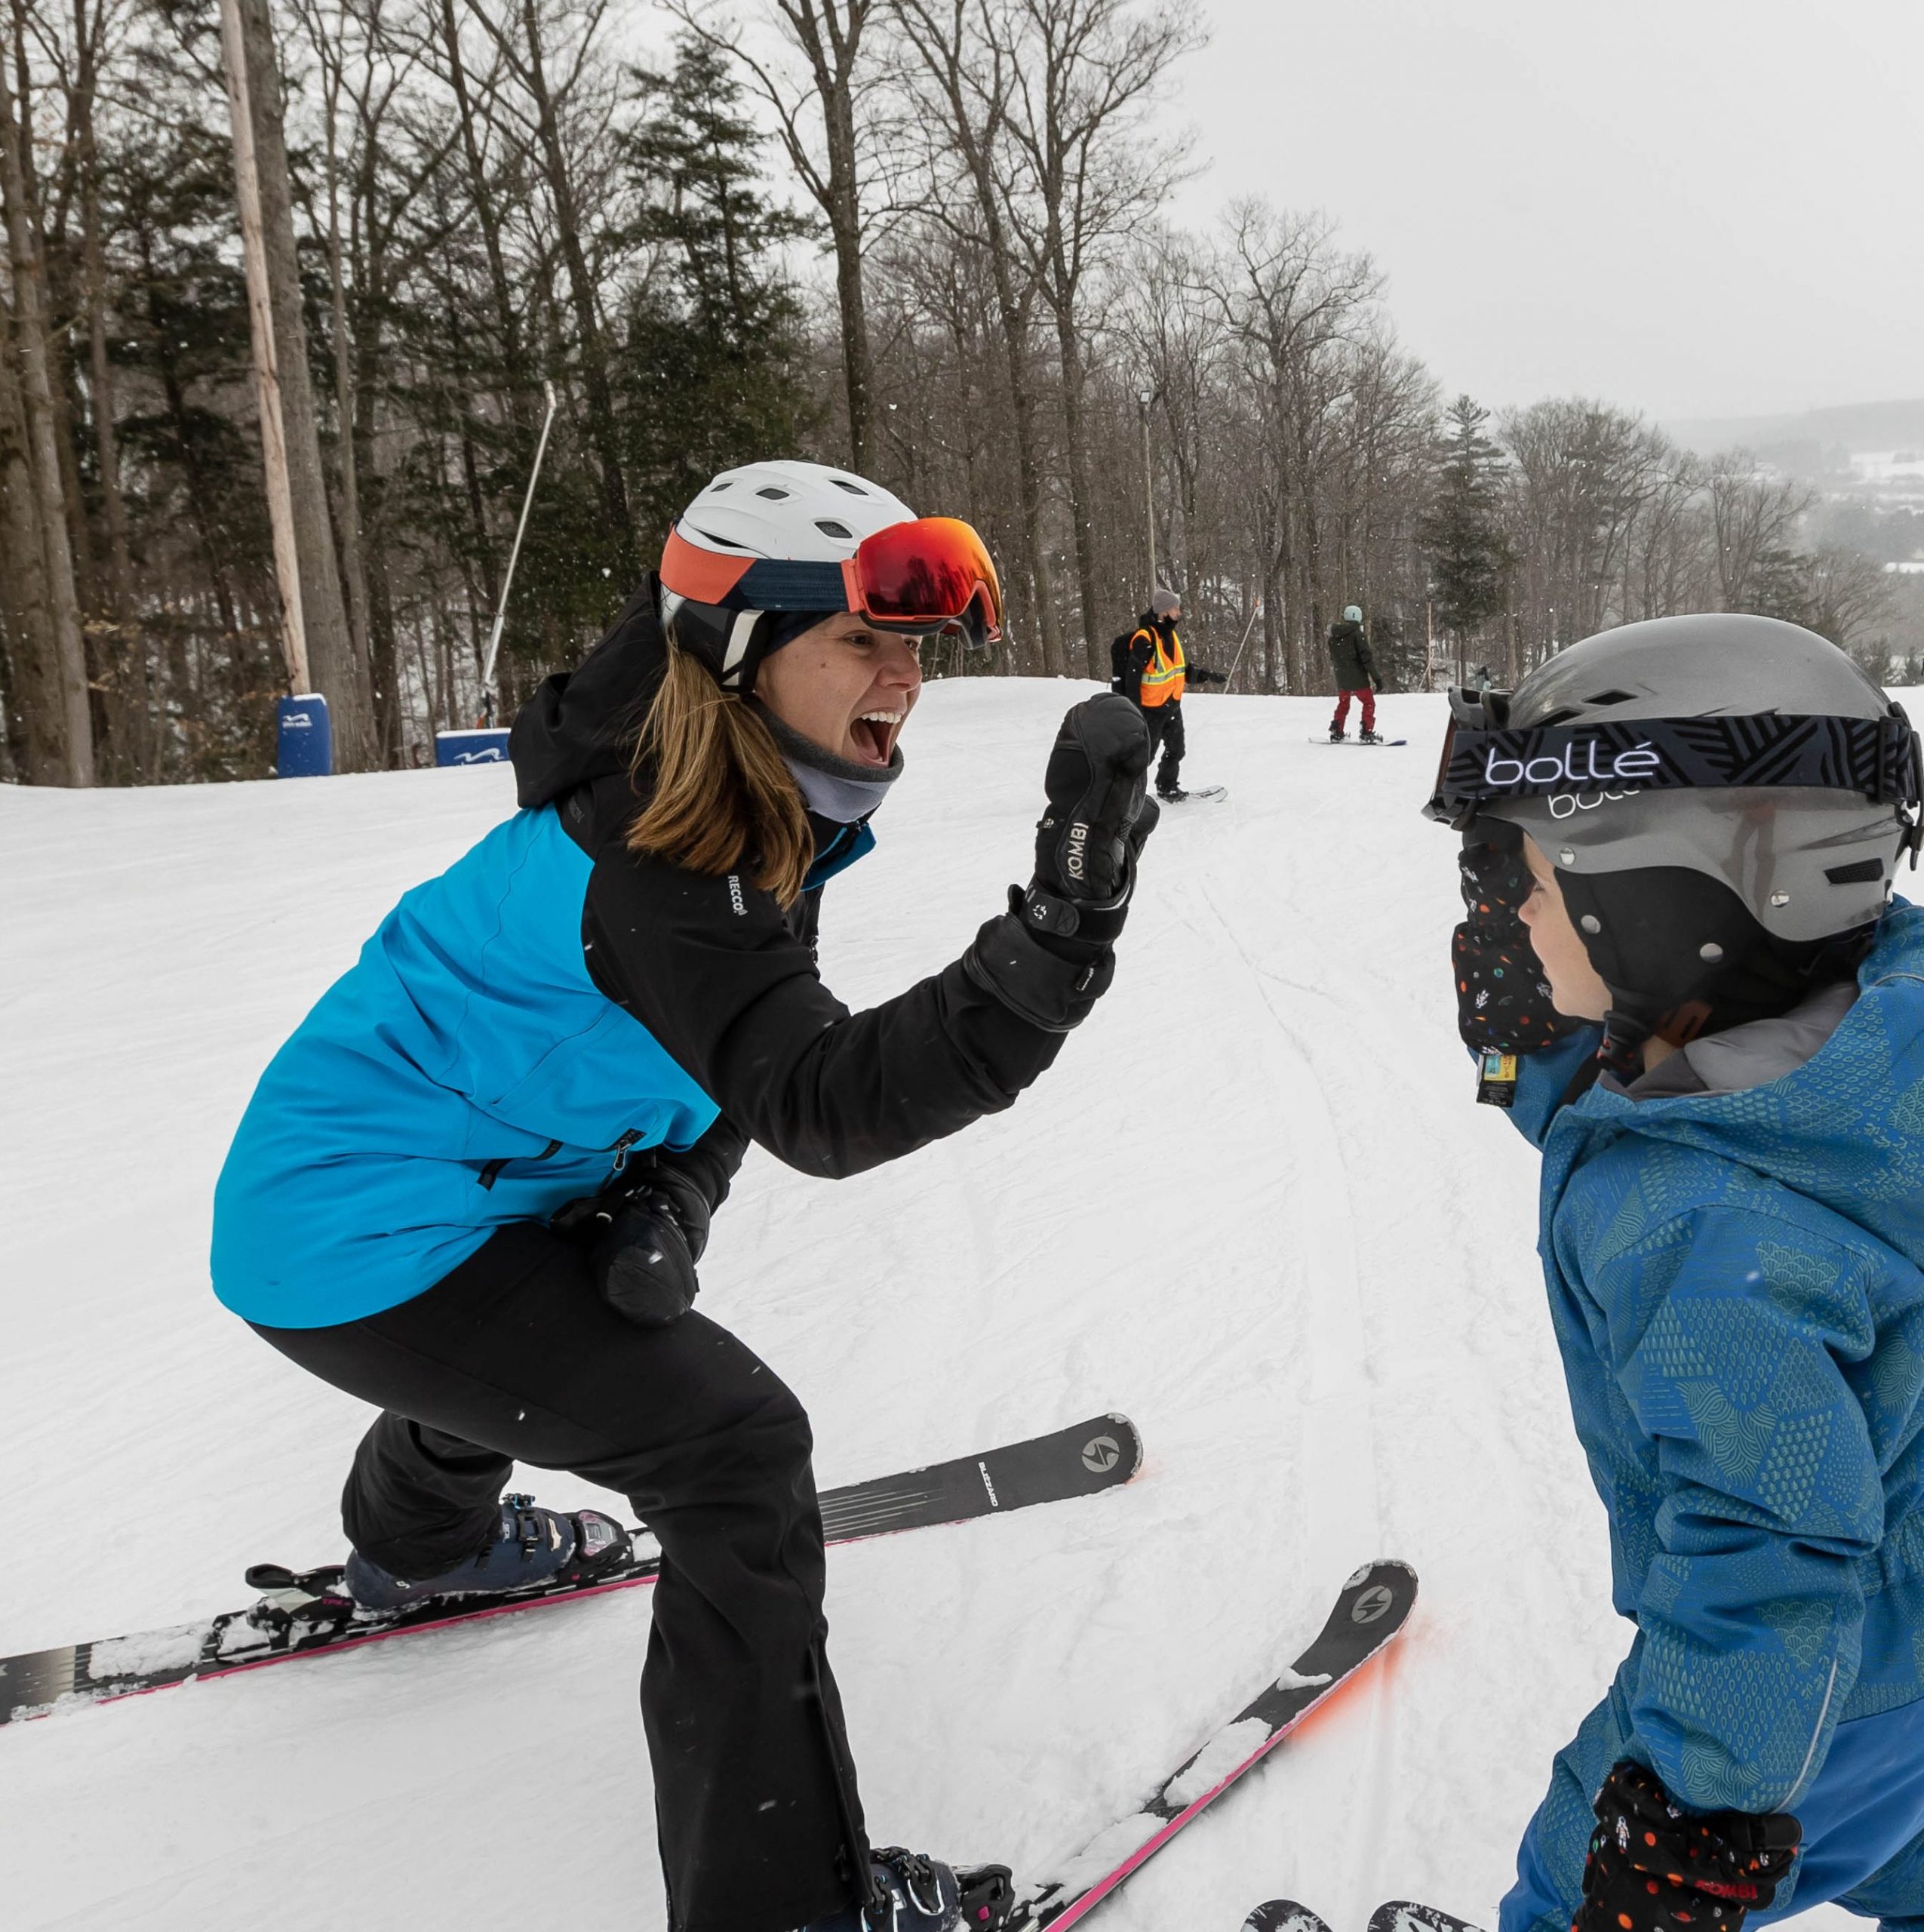 una niña esquiando choca los cinco con otra niña